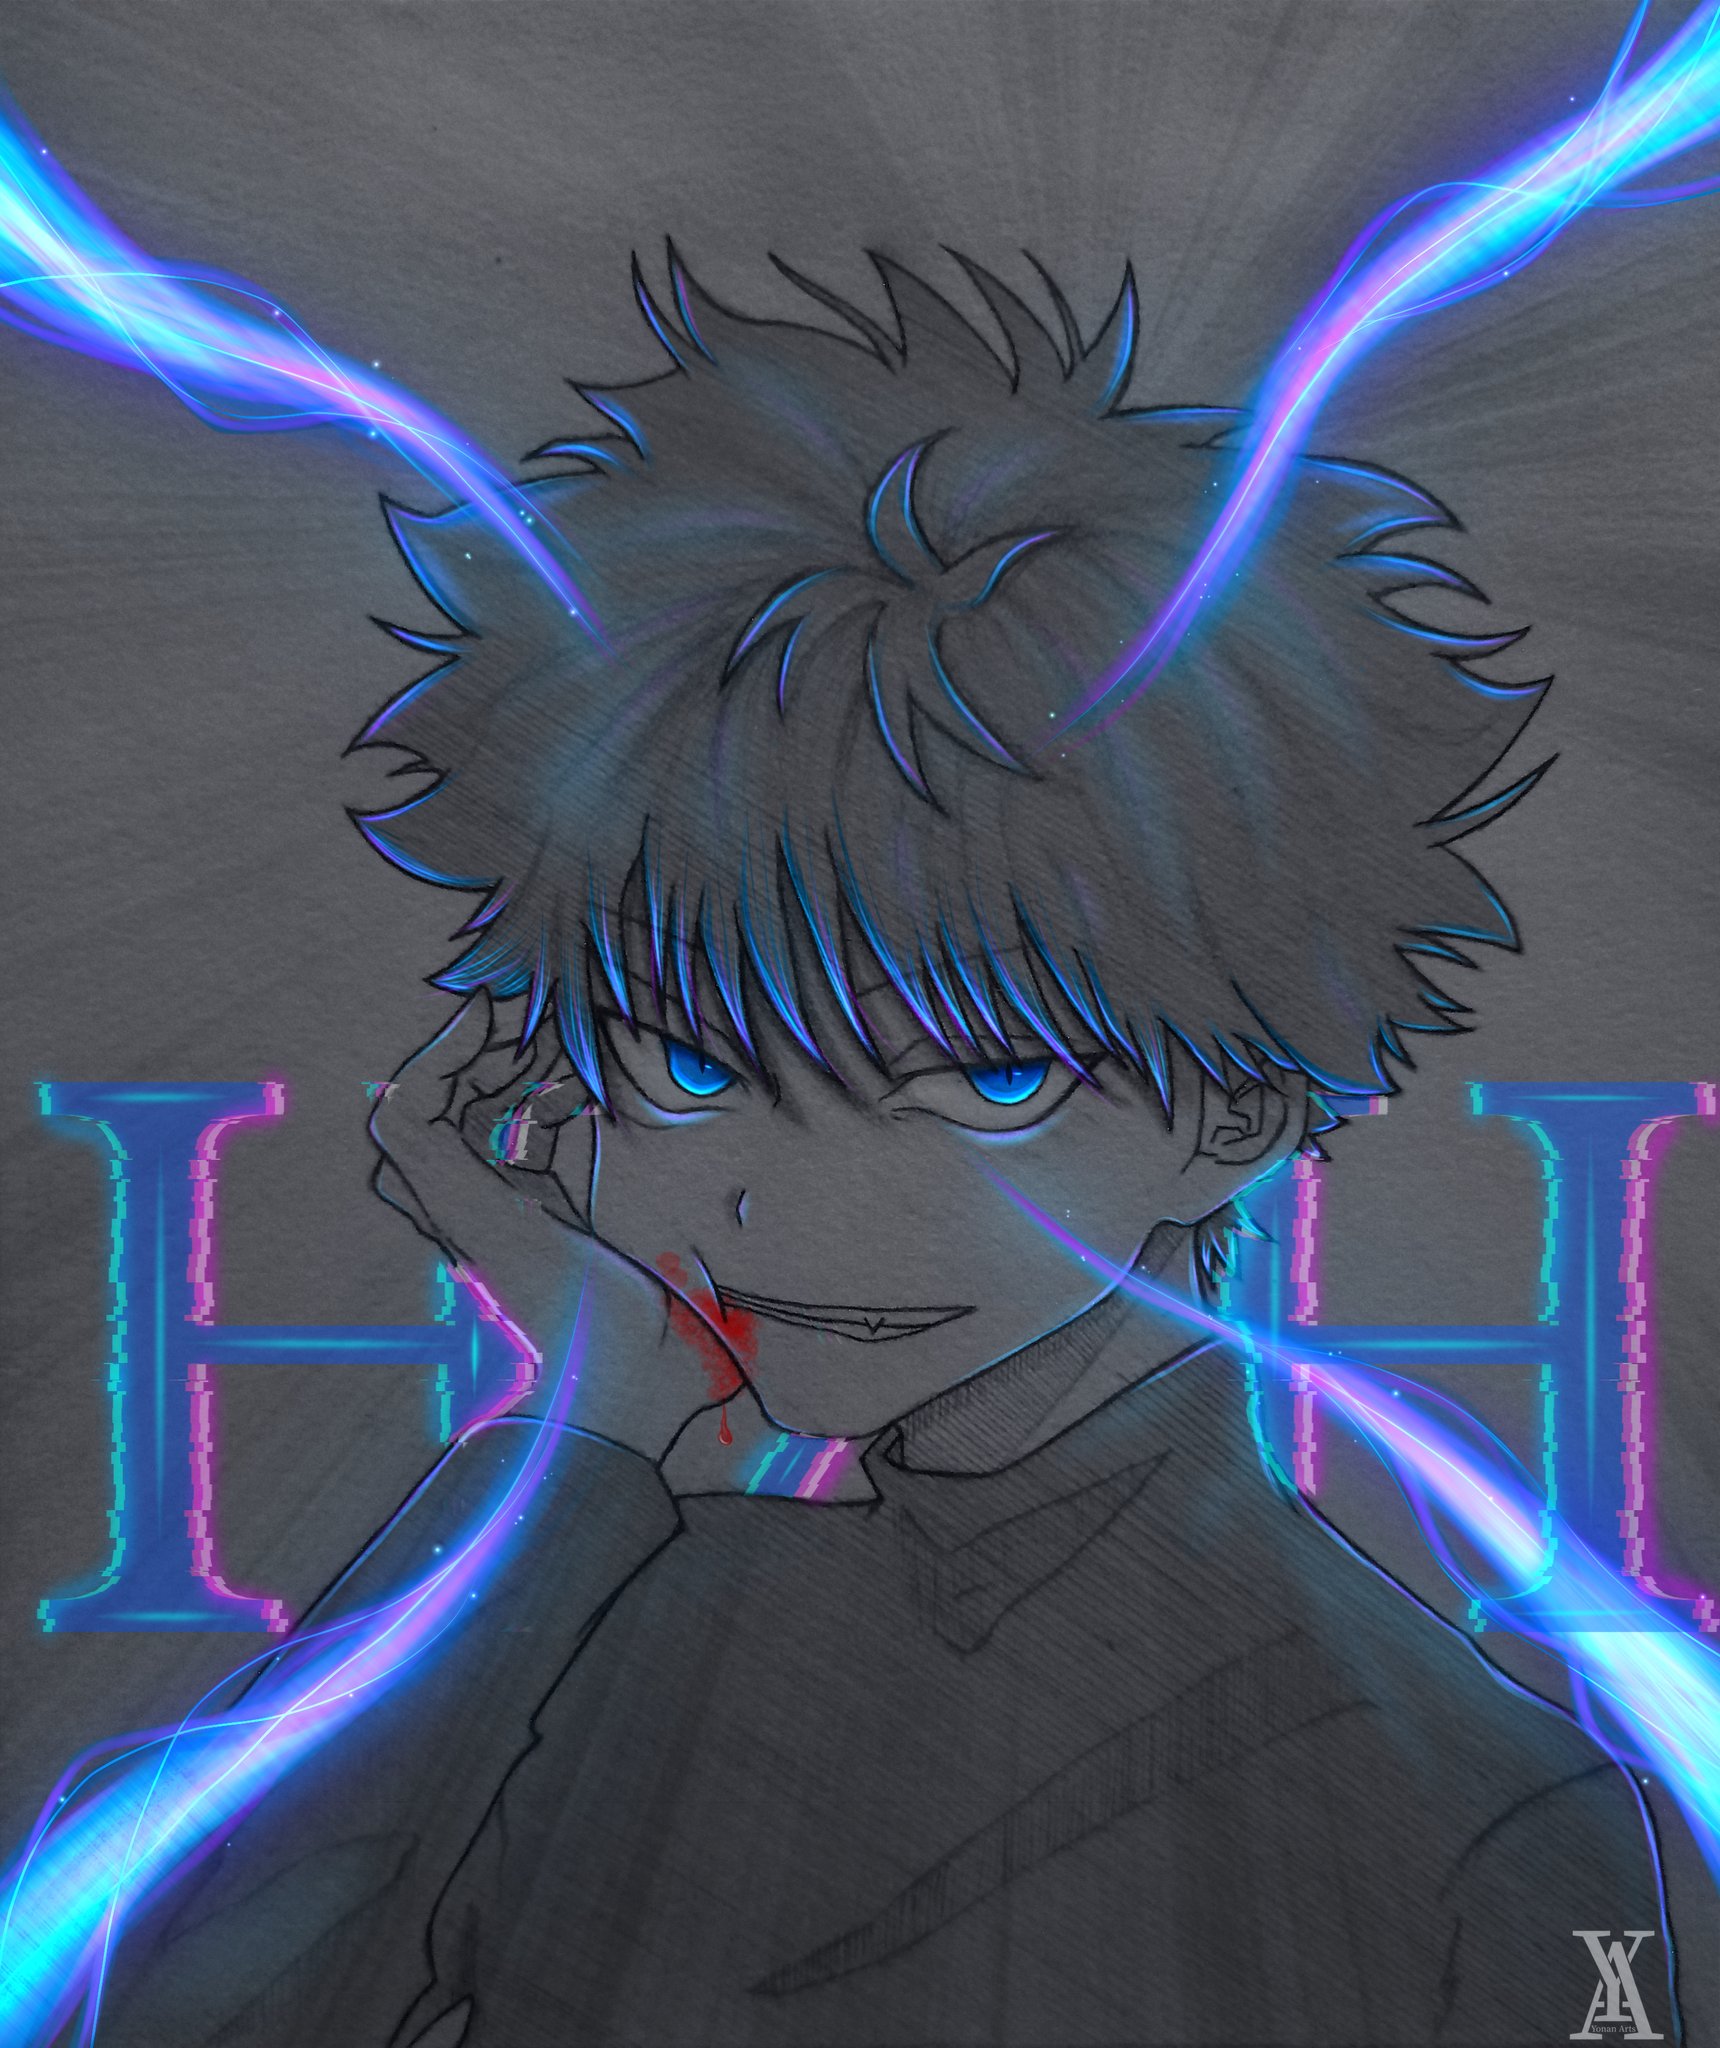 Animedrawings + Digital Glow 🎨 on Instagram: “Blue typ Glow